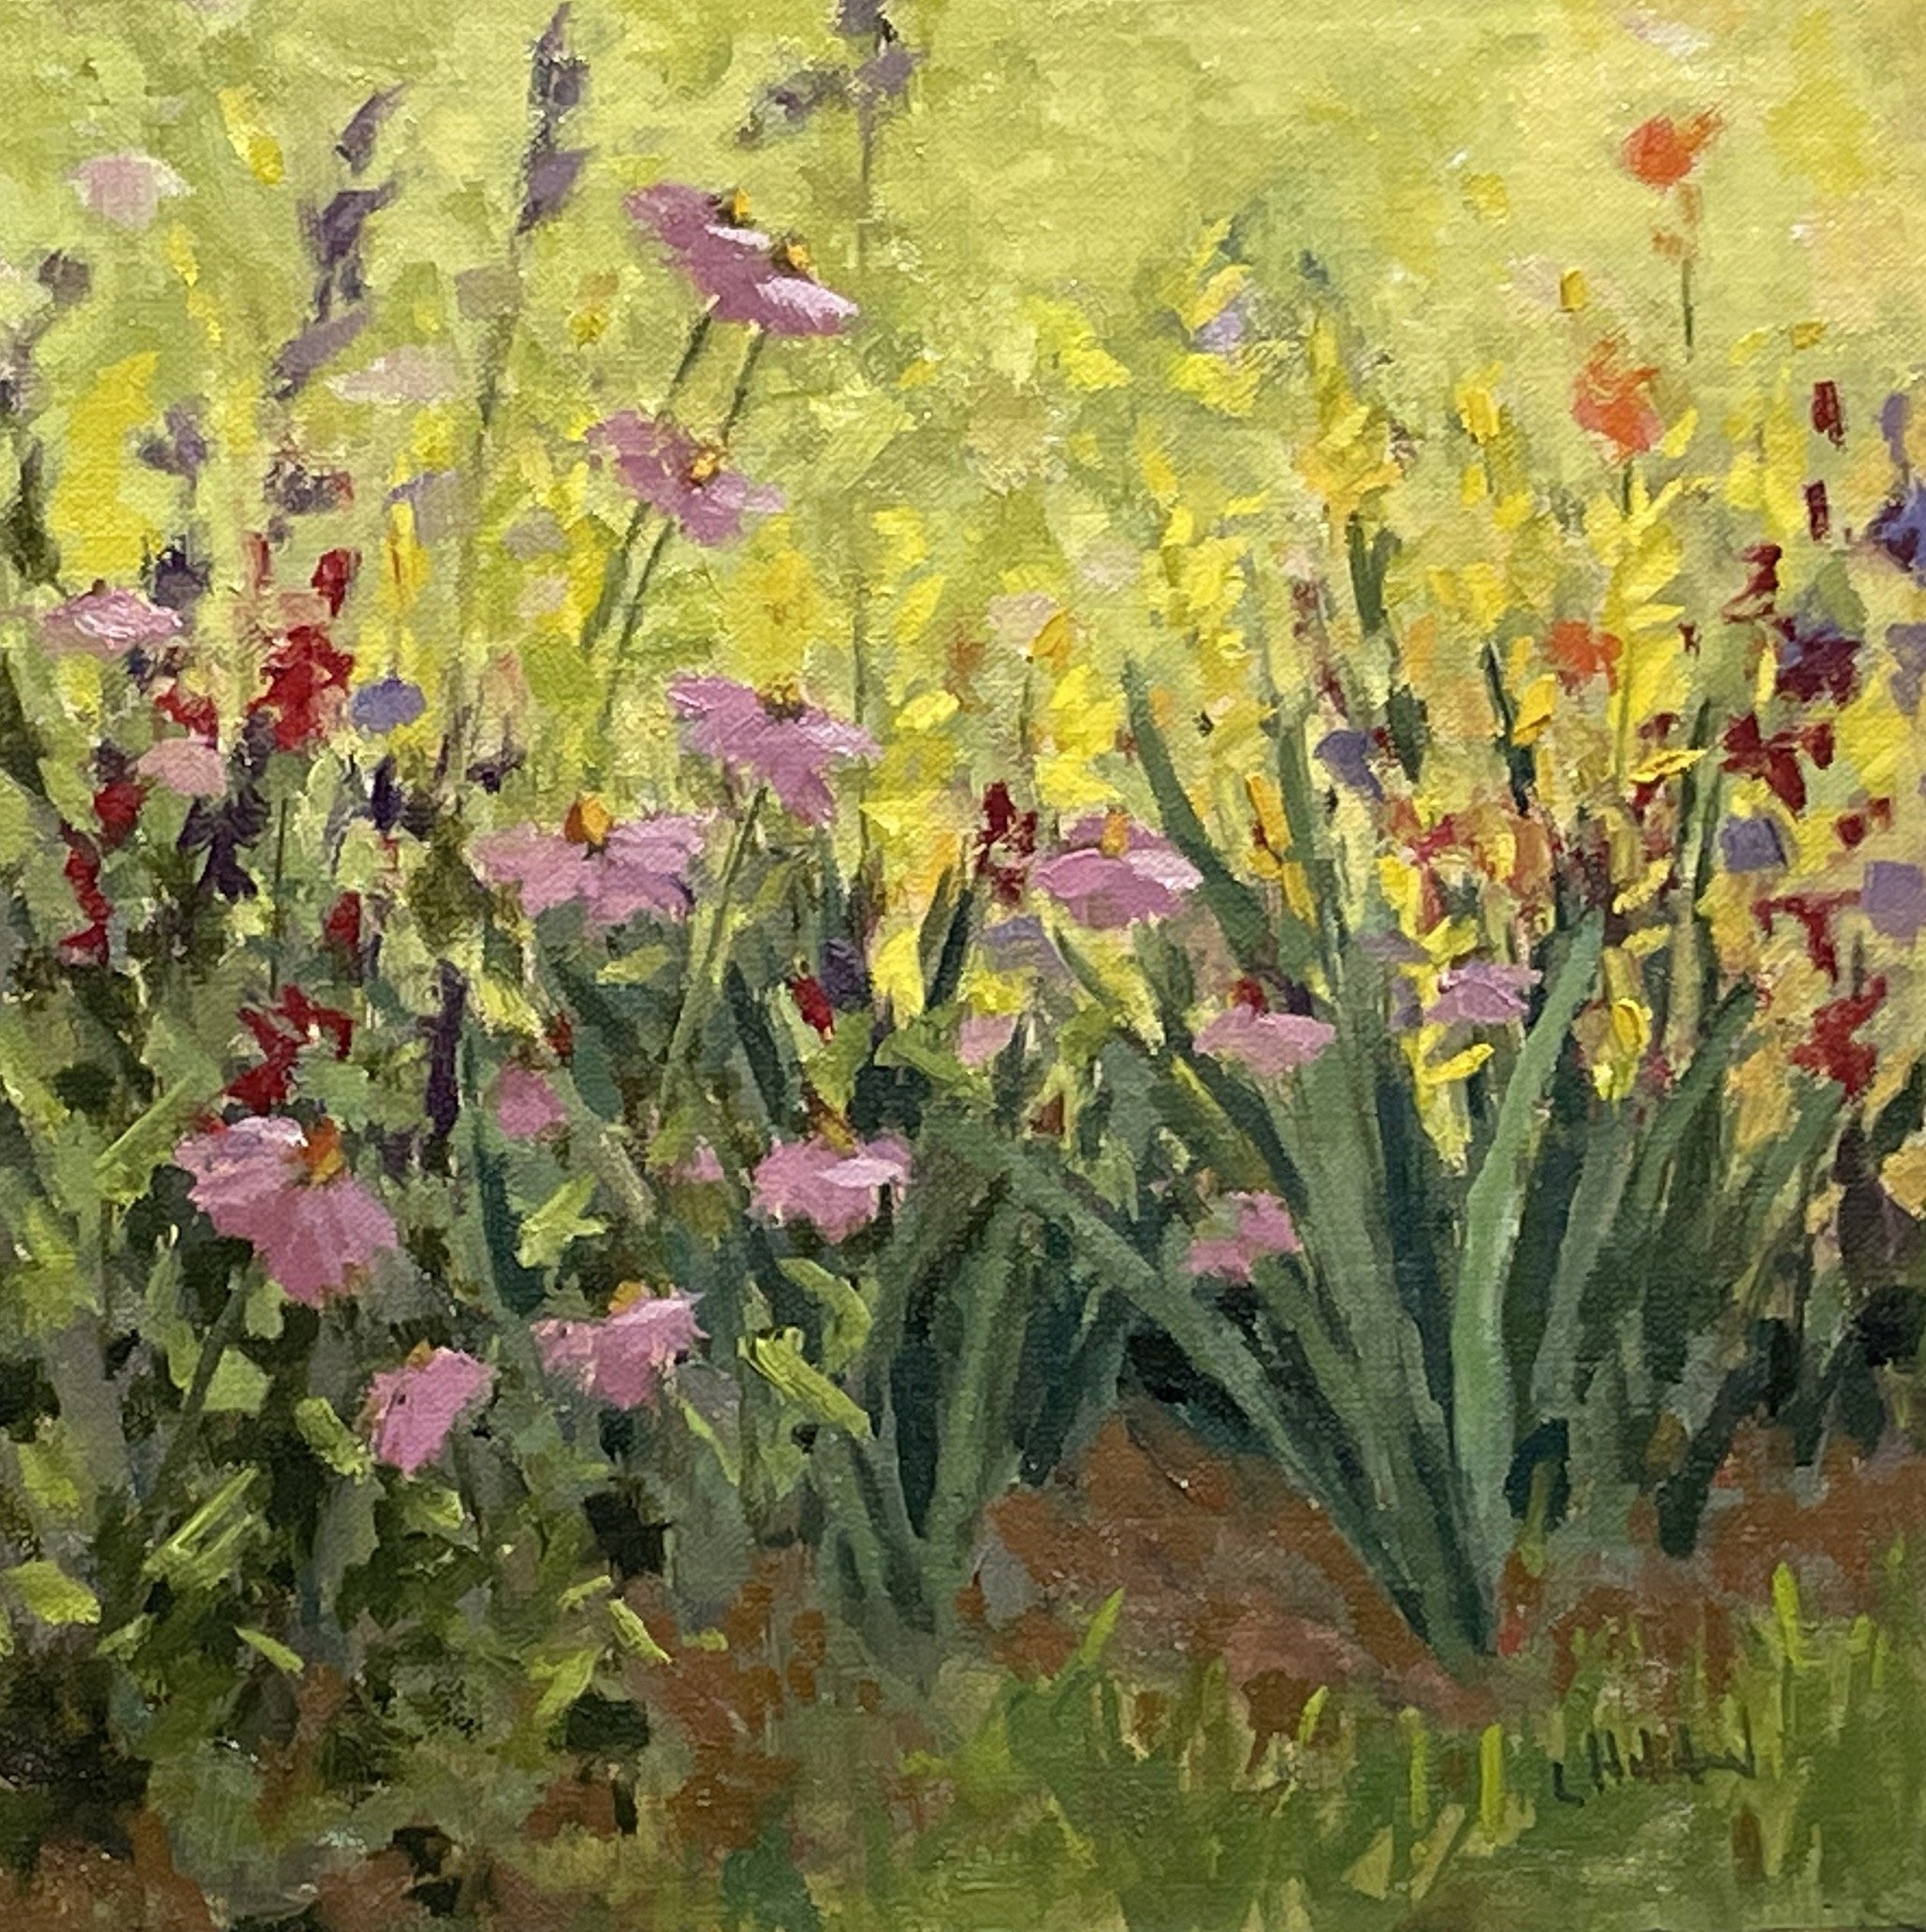 Garden Delight, oil on linen, 8 x 8, sold